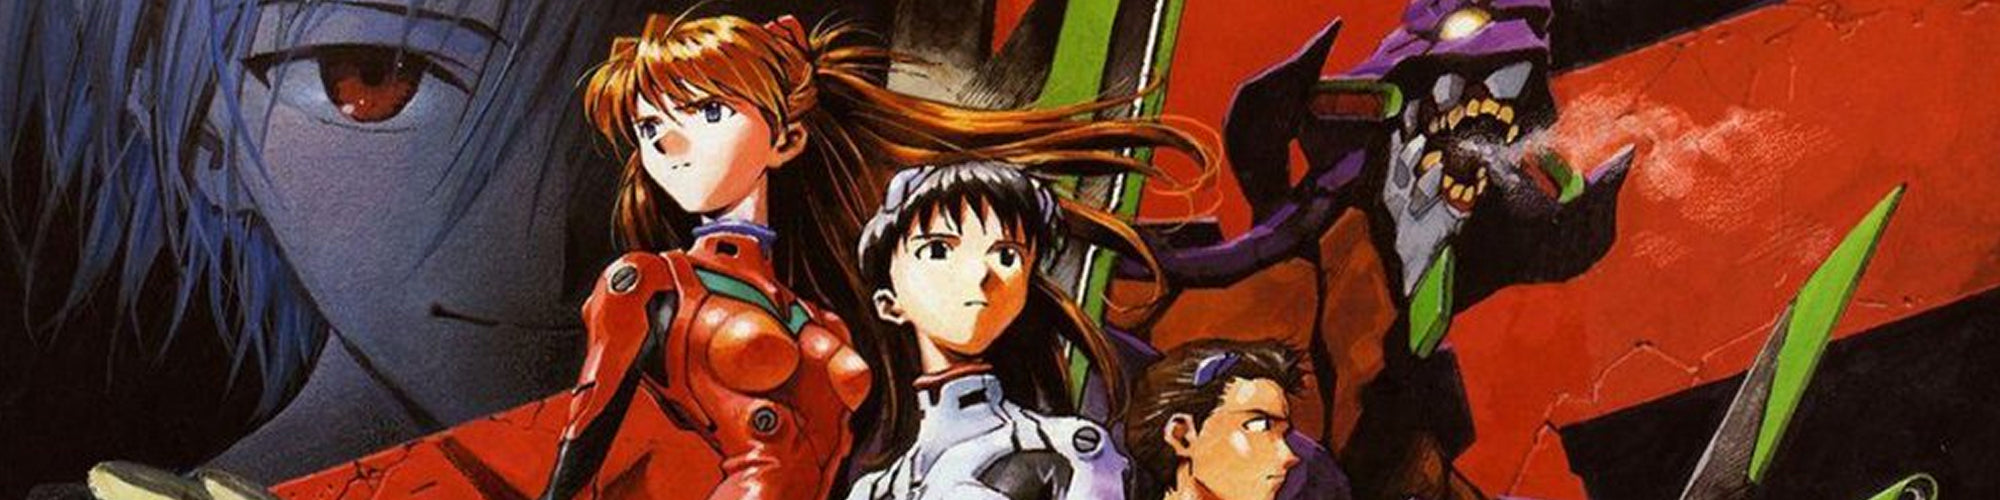 Los mejores openings de anime de los 90 según CBR